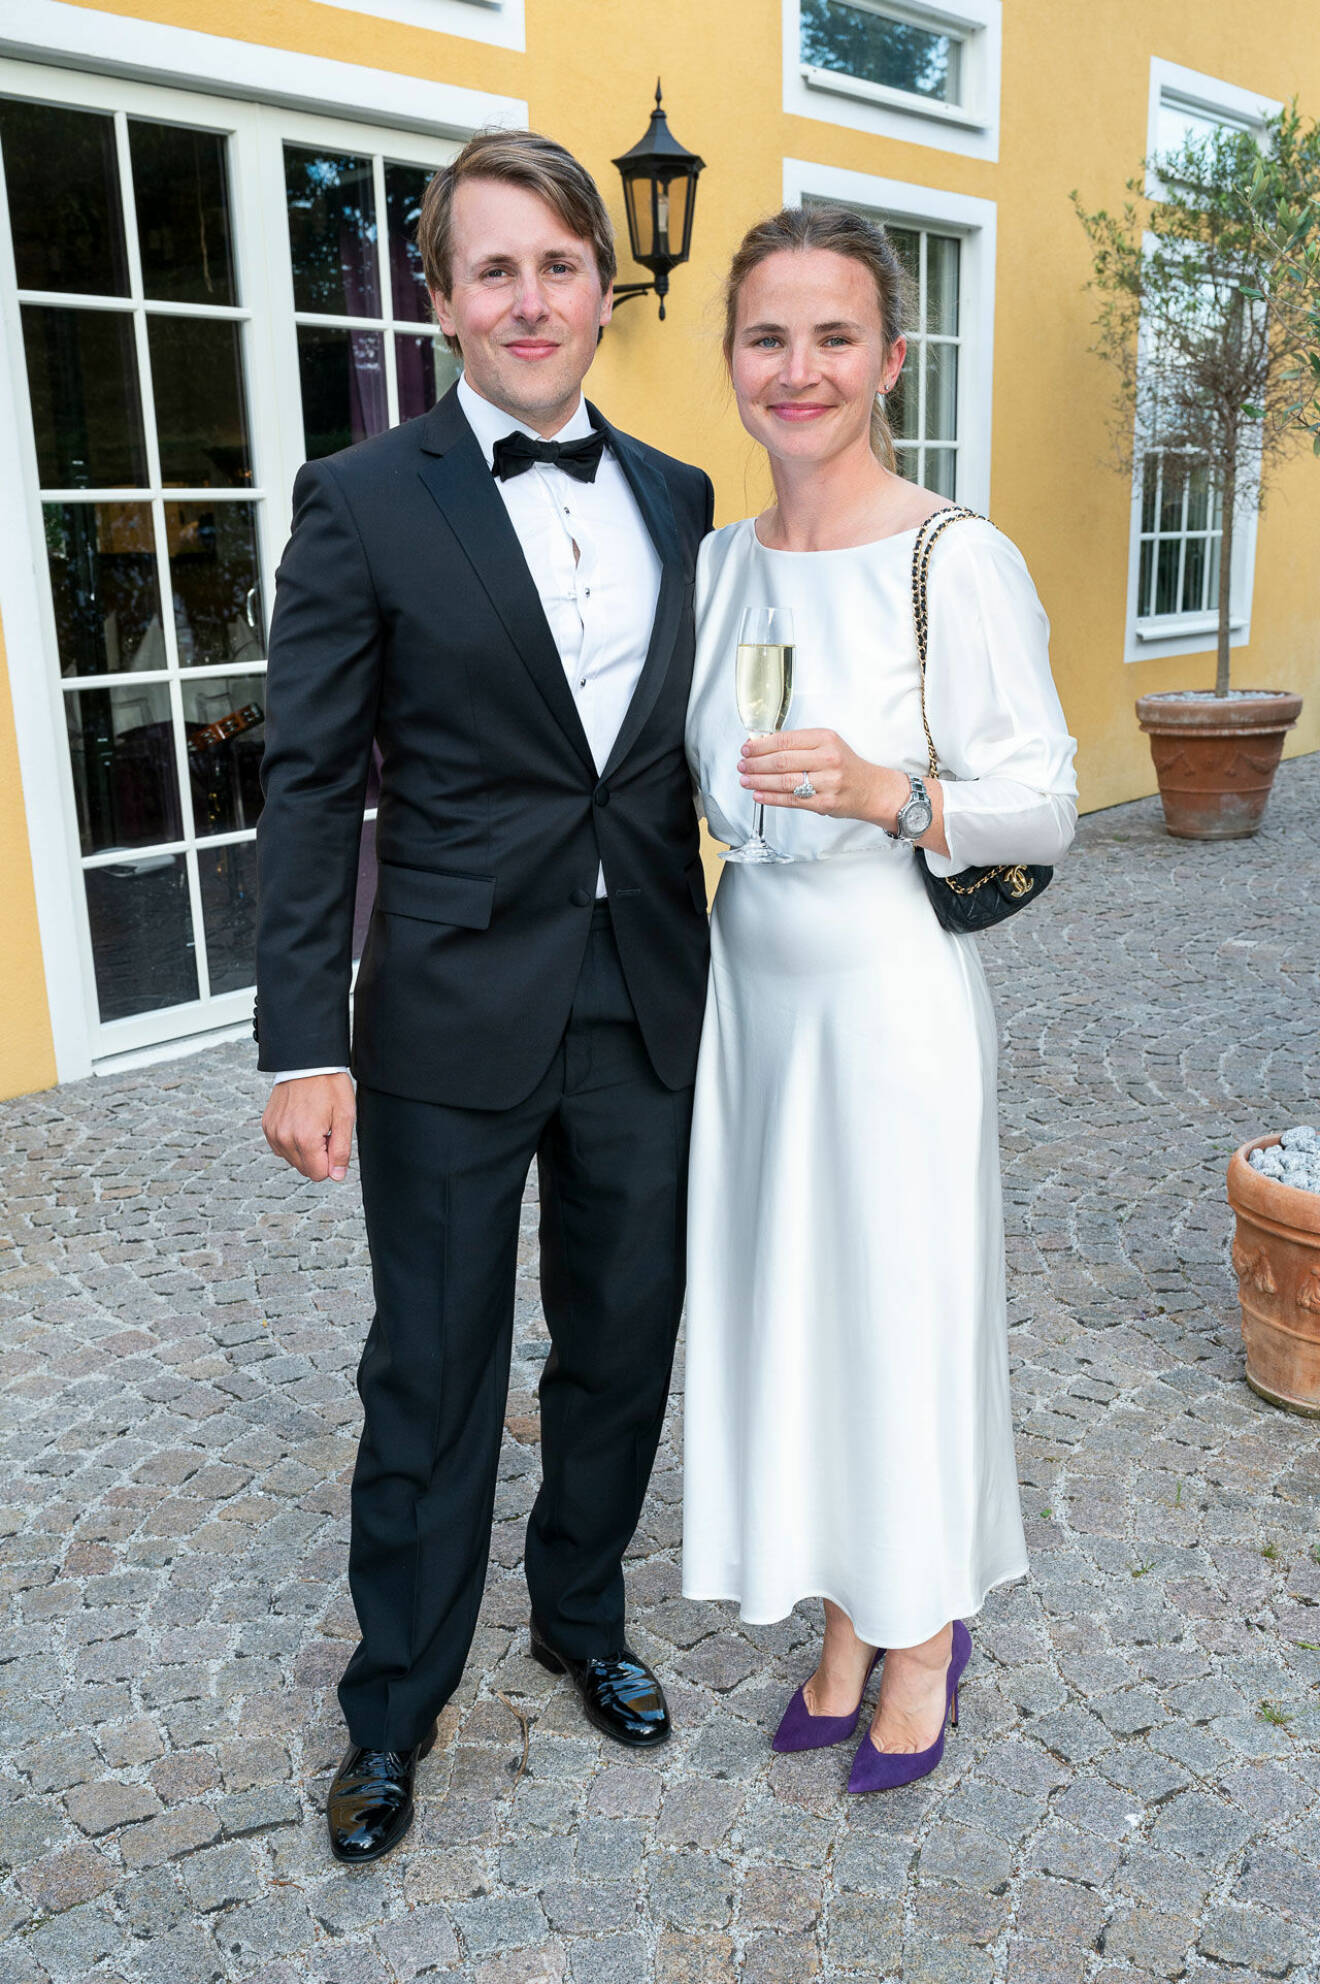 Nygifta och lyckliga är Pierre och Astrid Jarlskog!